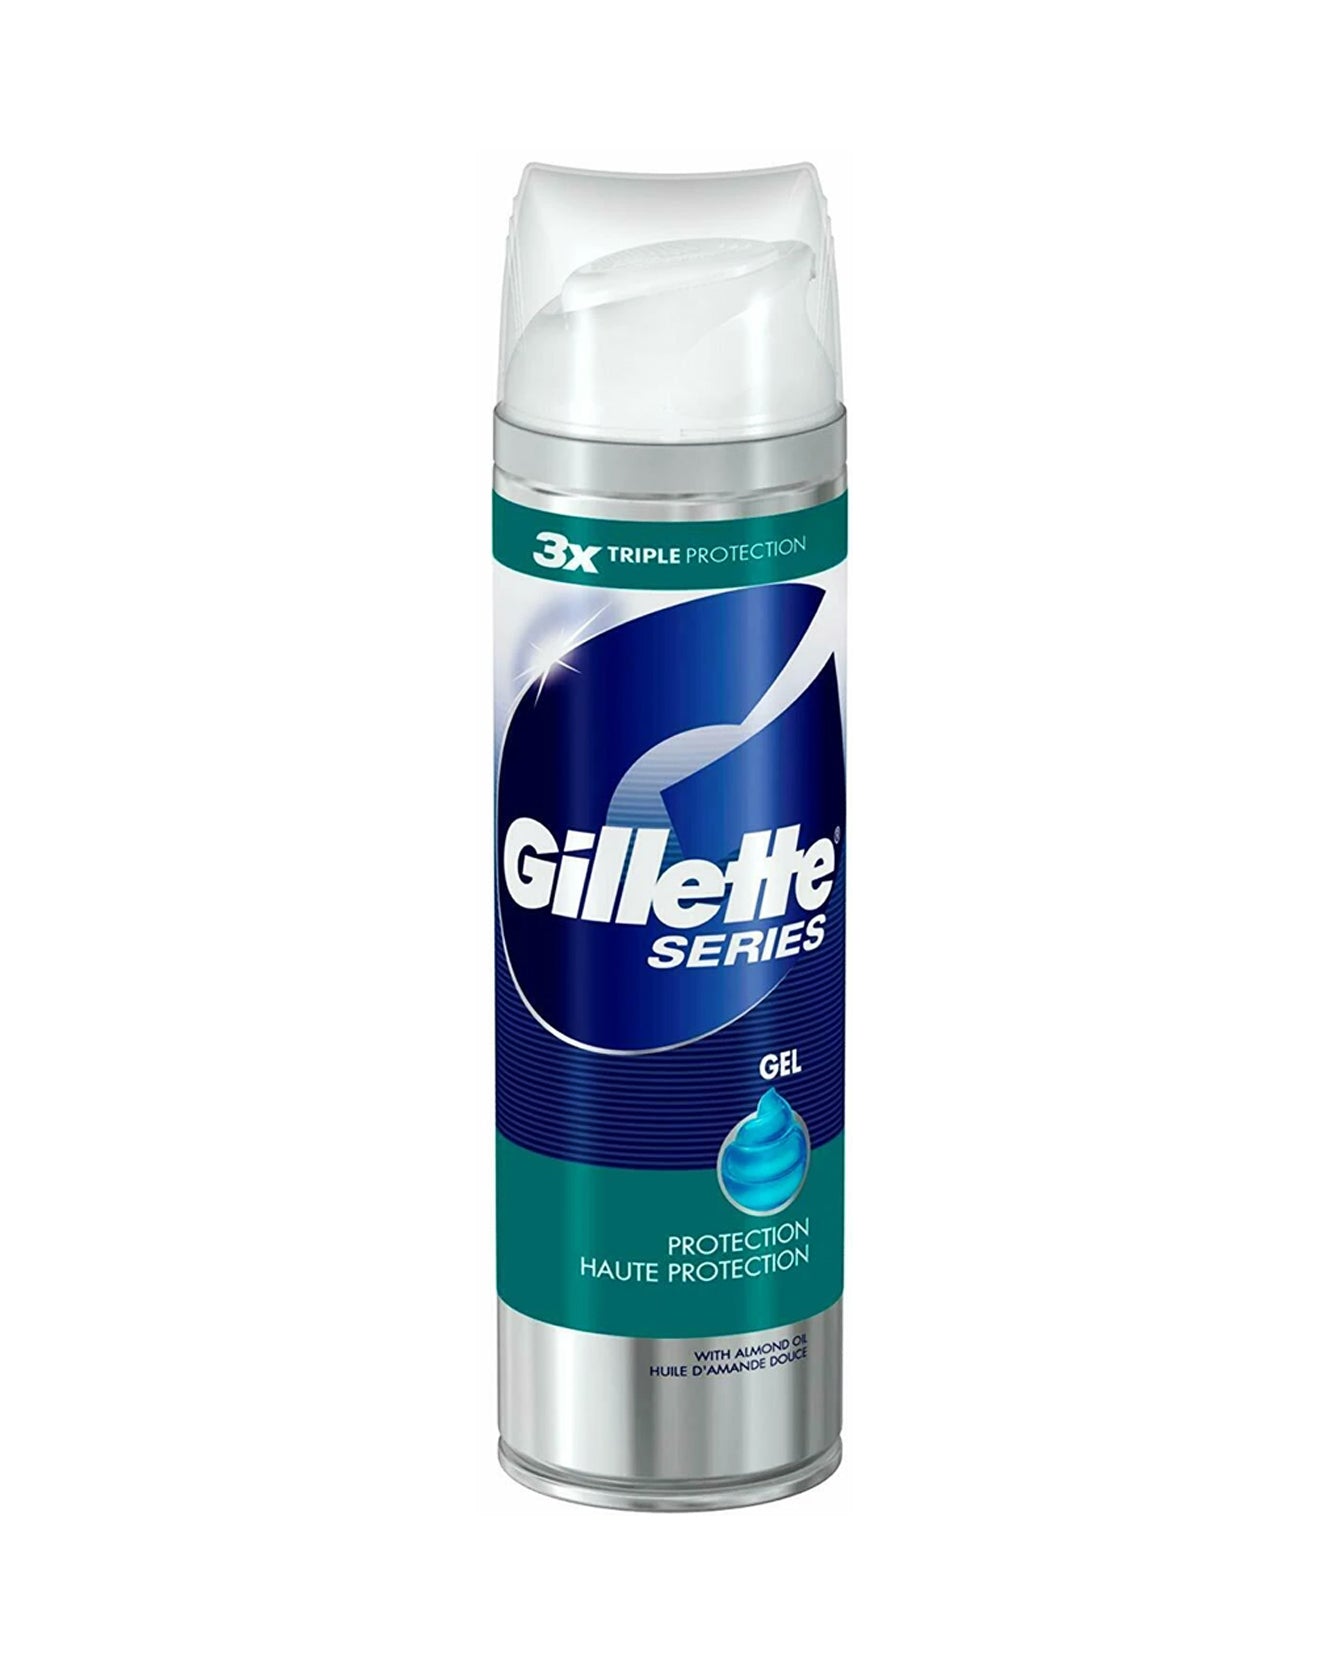 Gillette Series Protection Shaving Gel, 200ml